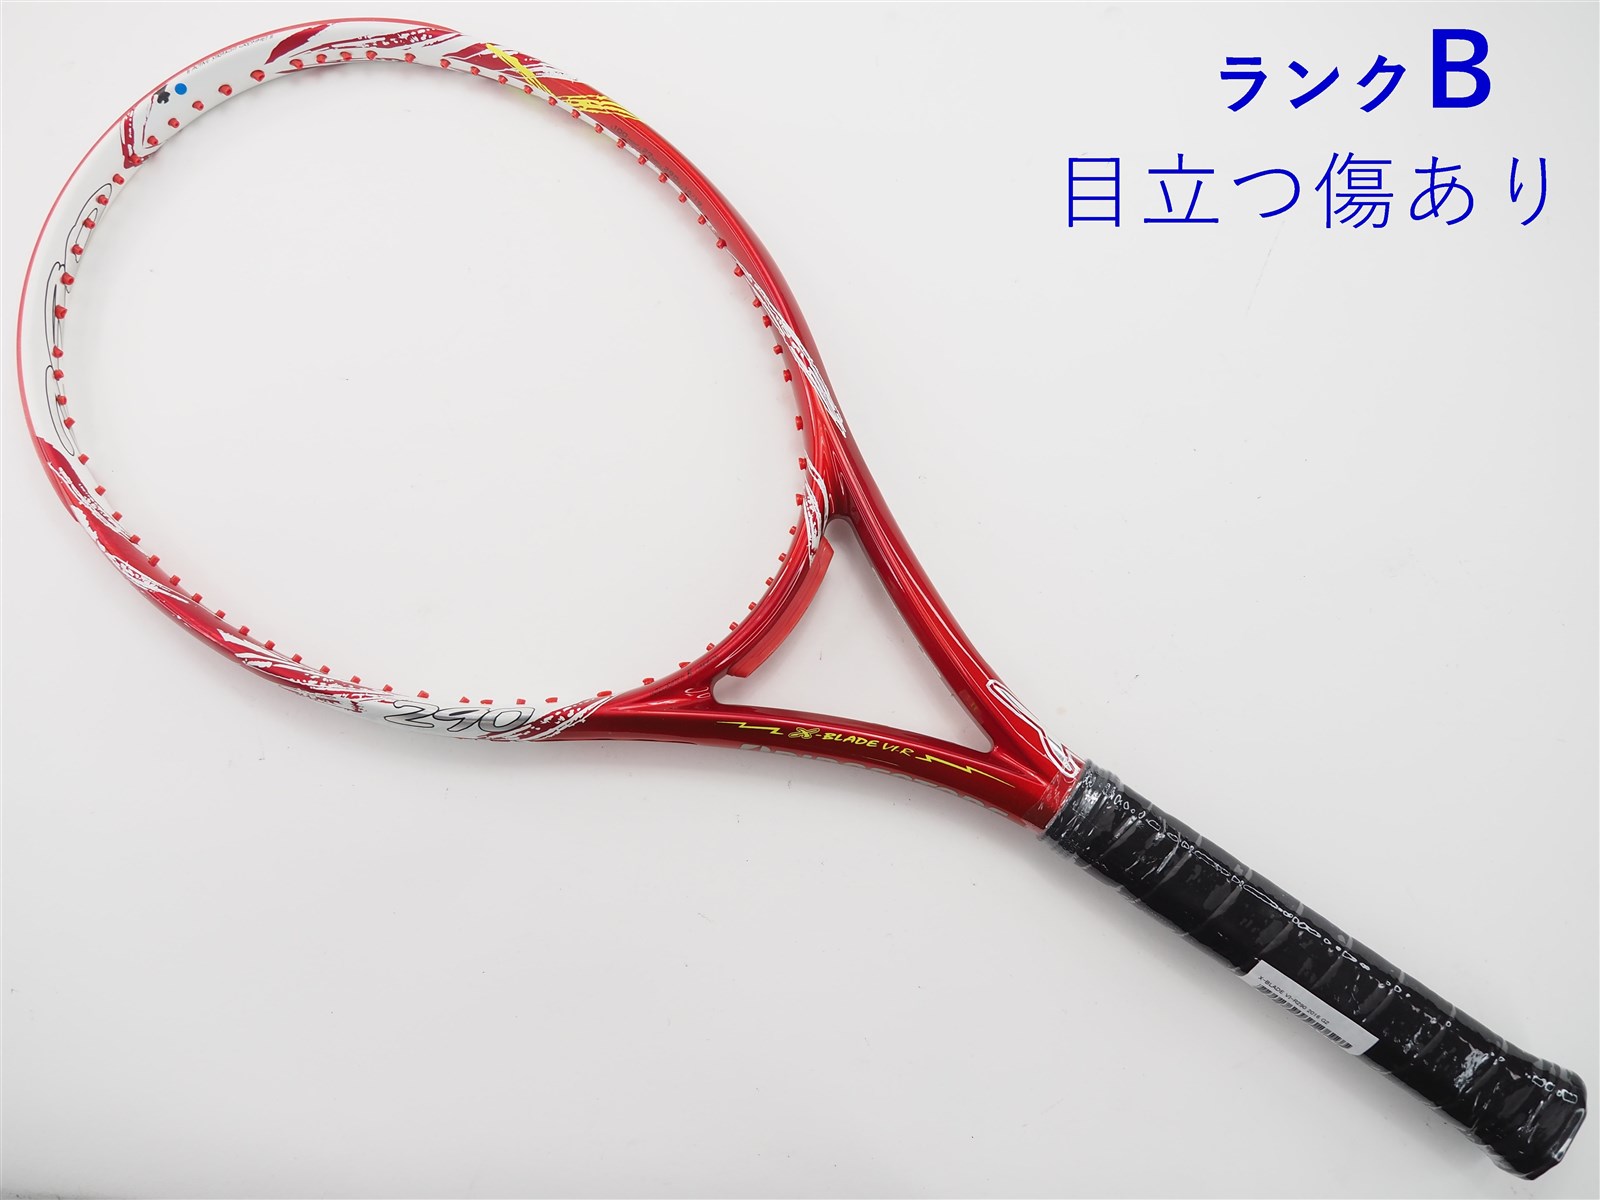 テニスラケット ブリヂストン エックスブレード ブイアイアール275 2016年モデル (G2)BRIDGESTONE X-BLADE VI-R275 2016